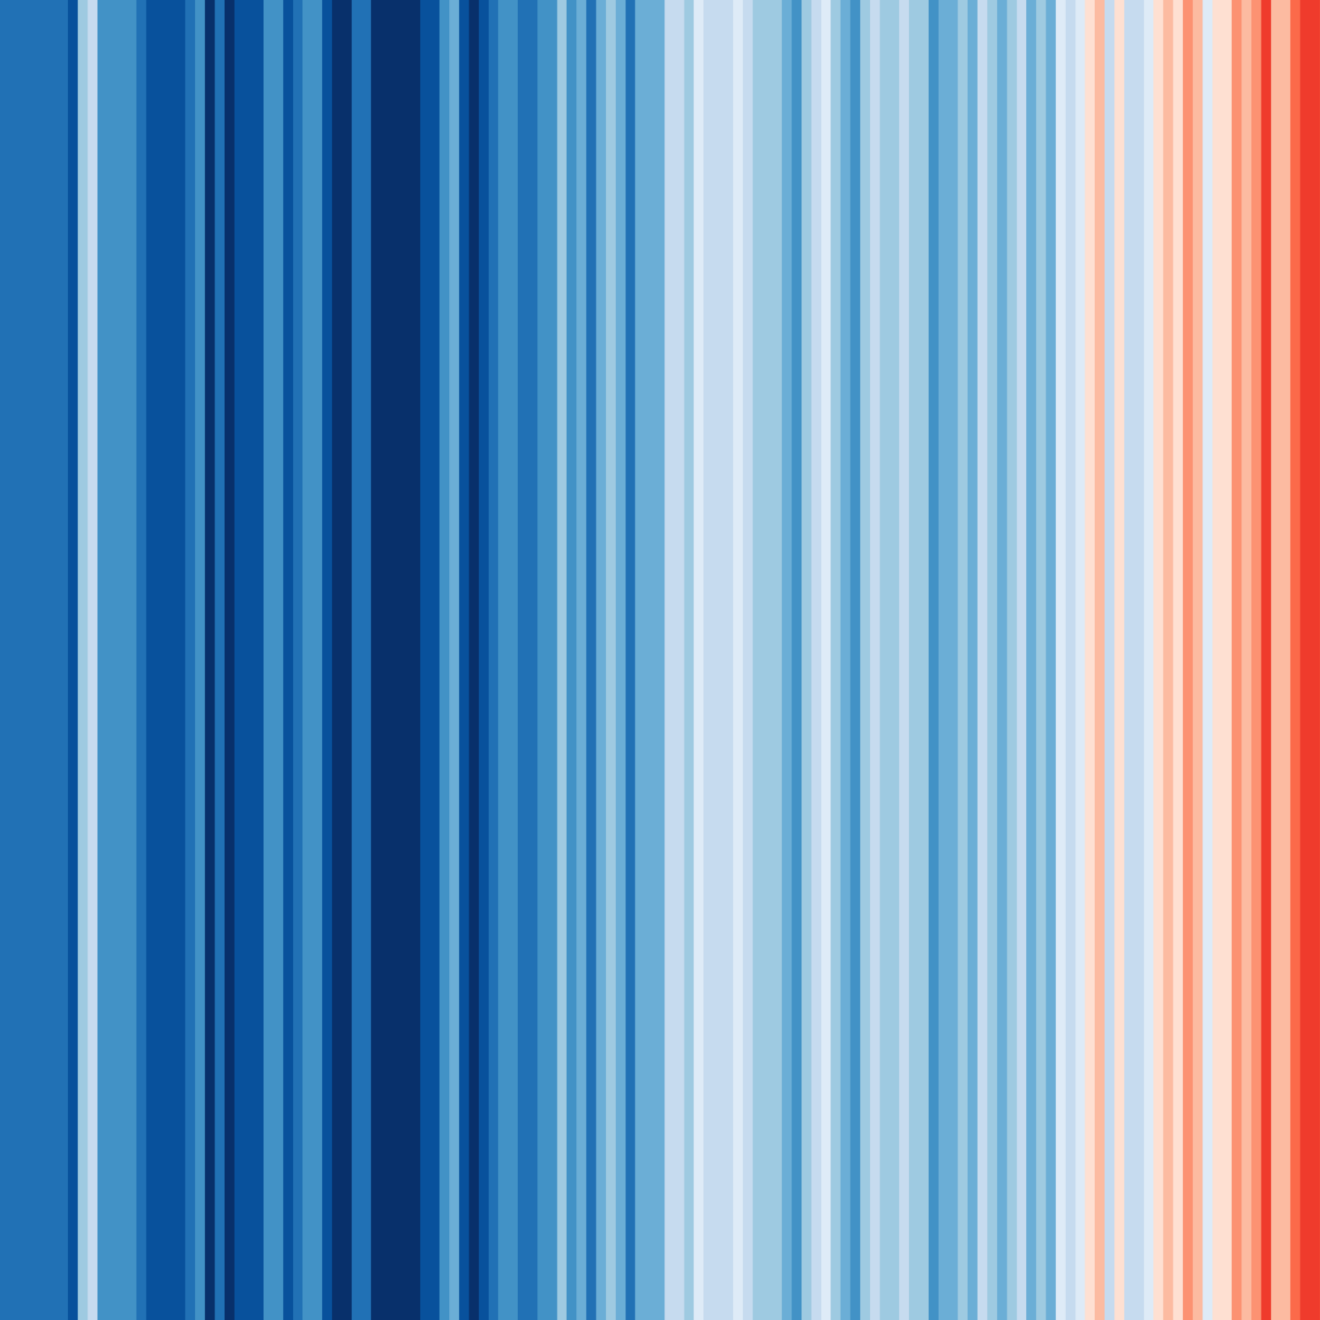 Ed Hawkins, « Globe 1850-2022 », Variations de la température globale de 1850 à 2022, University of Reading | showyourstripes.info | CC by 4.0